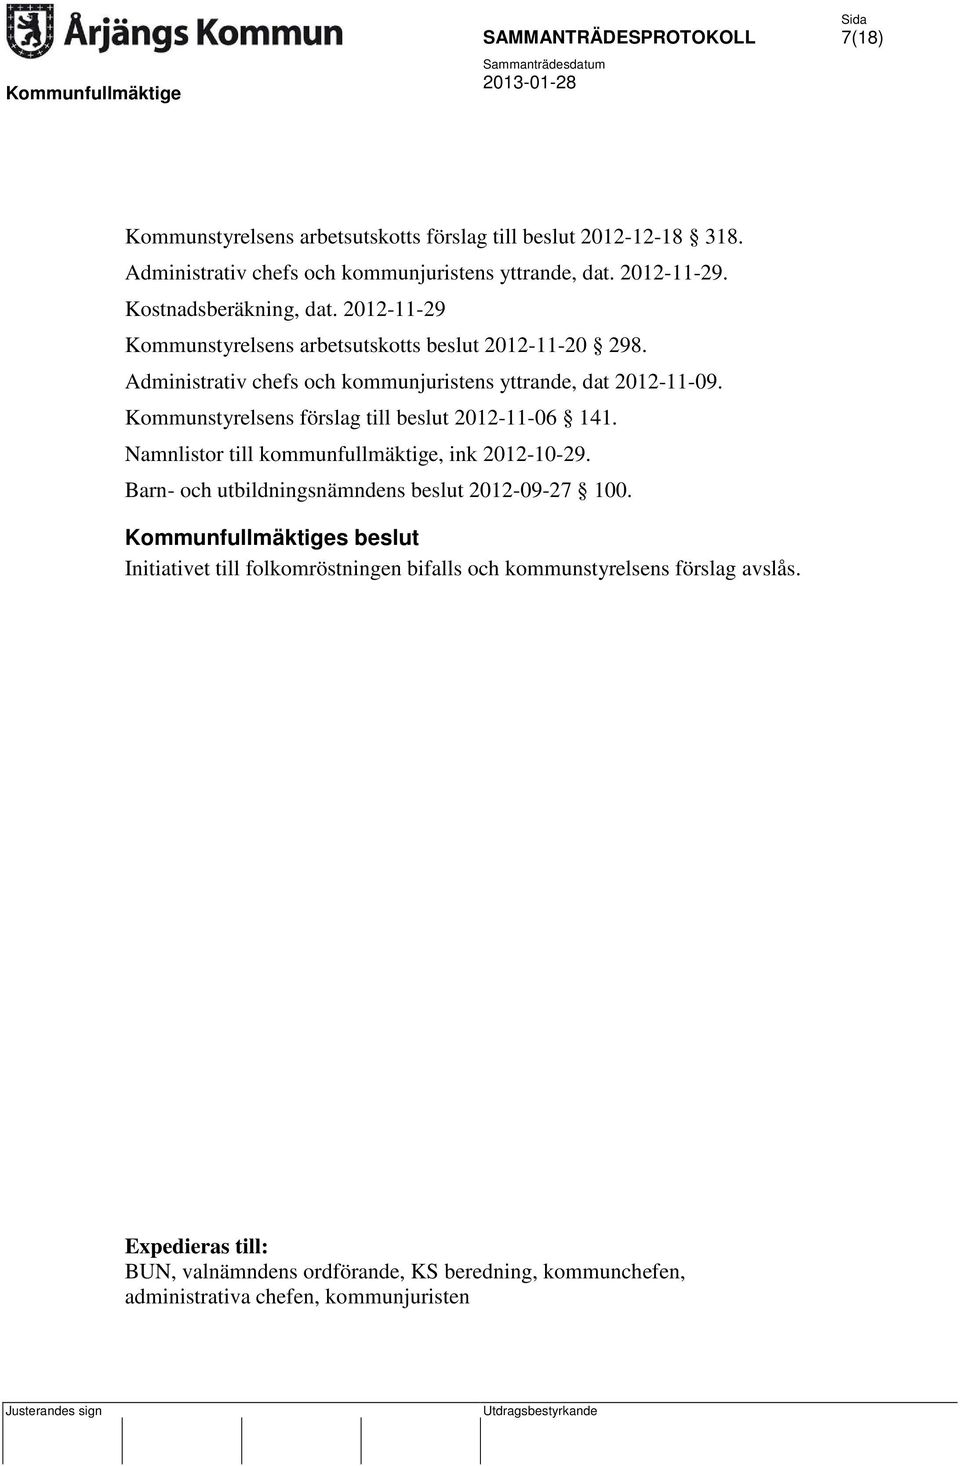 Kommunstyrelsens förslag till beslut 2012-11-06 141. Namnlistor till kommunfullmäktige, ink 2012-10-29. Barn- och utbildningsnämndens beslut 2012-09-27 100.